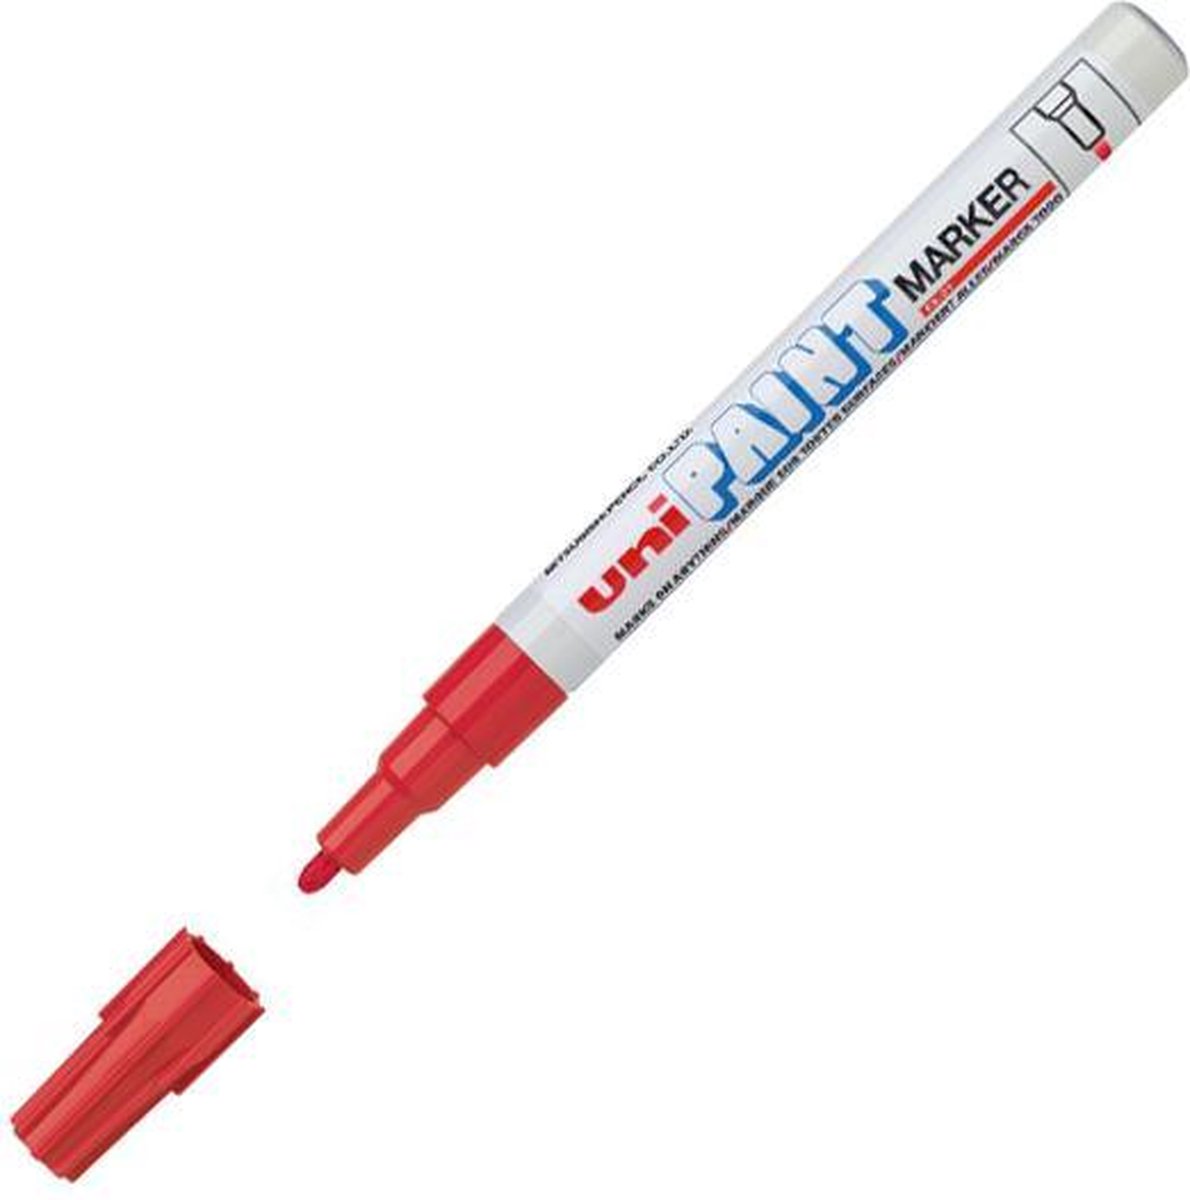 Uni Paint PX-21 Paint Marker - Rode verfstift met 0.8 - 1.2 mm punt